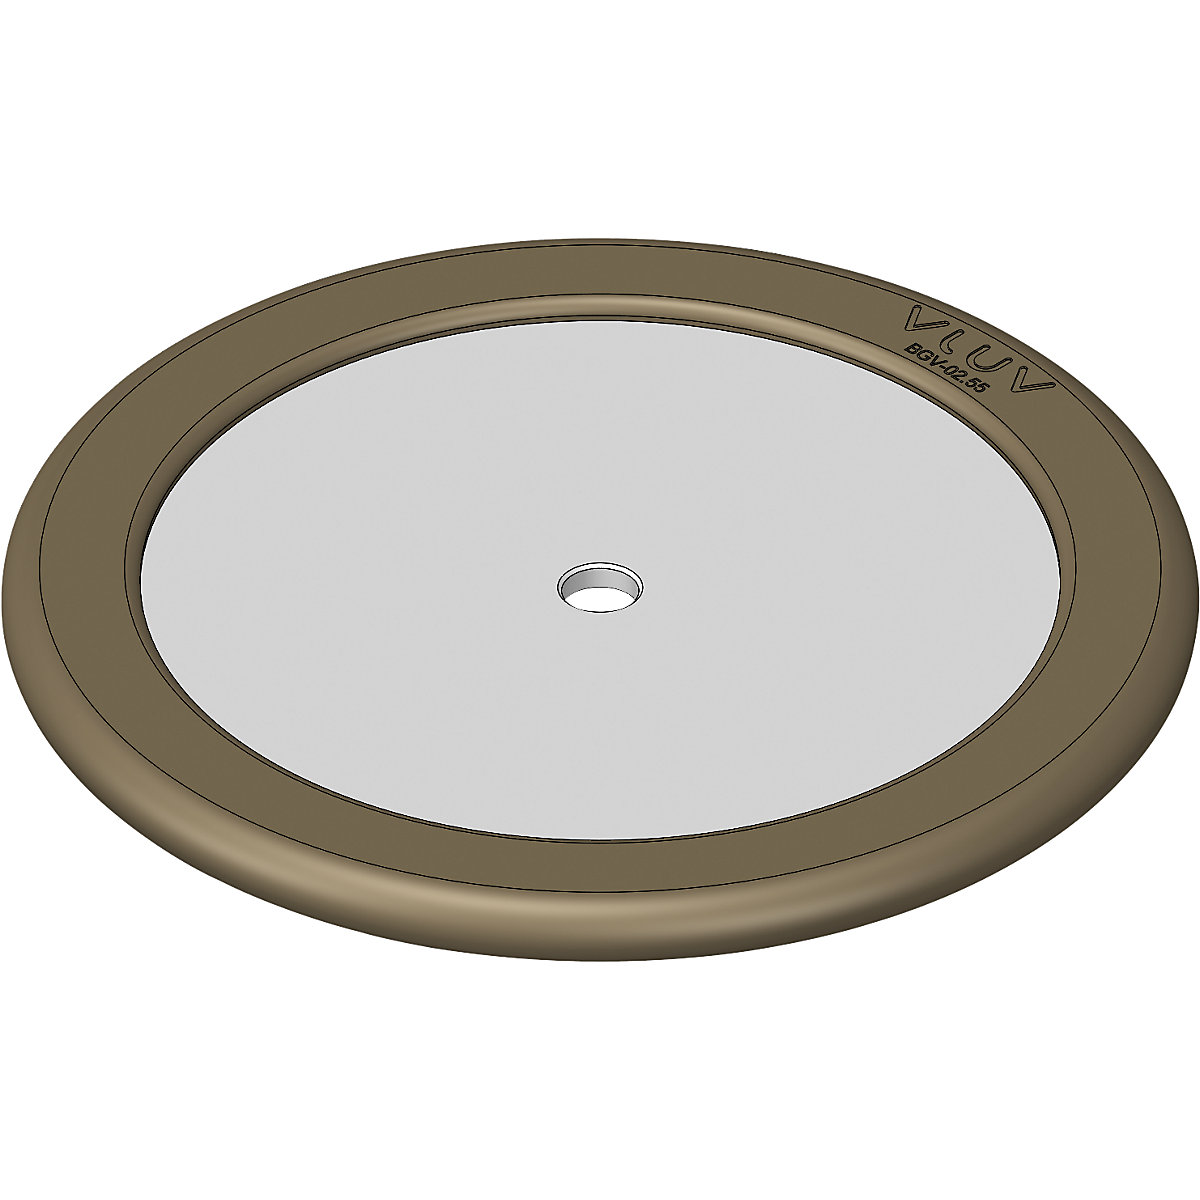 Peso stabilizzante per fitball UPP2, per la stabilizzazione, per diametro palla 50 – 55 cm-1